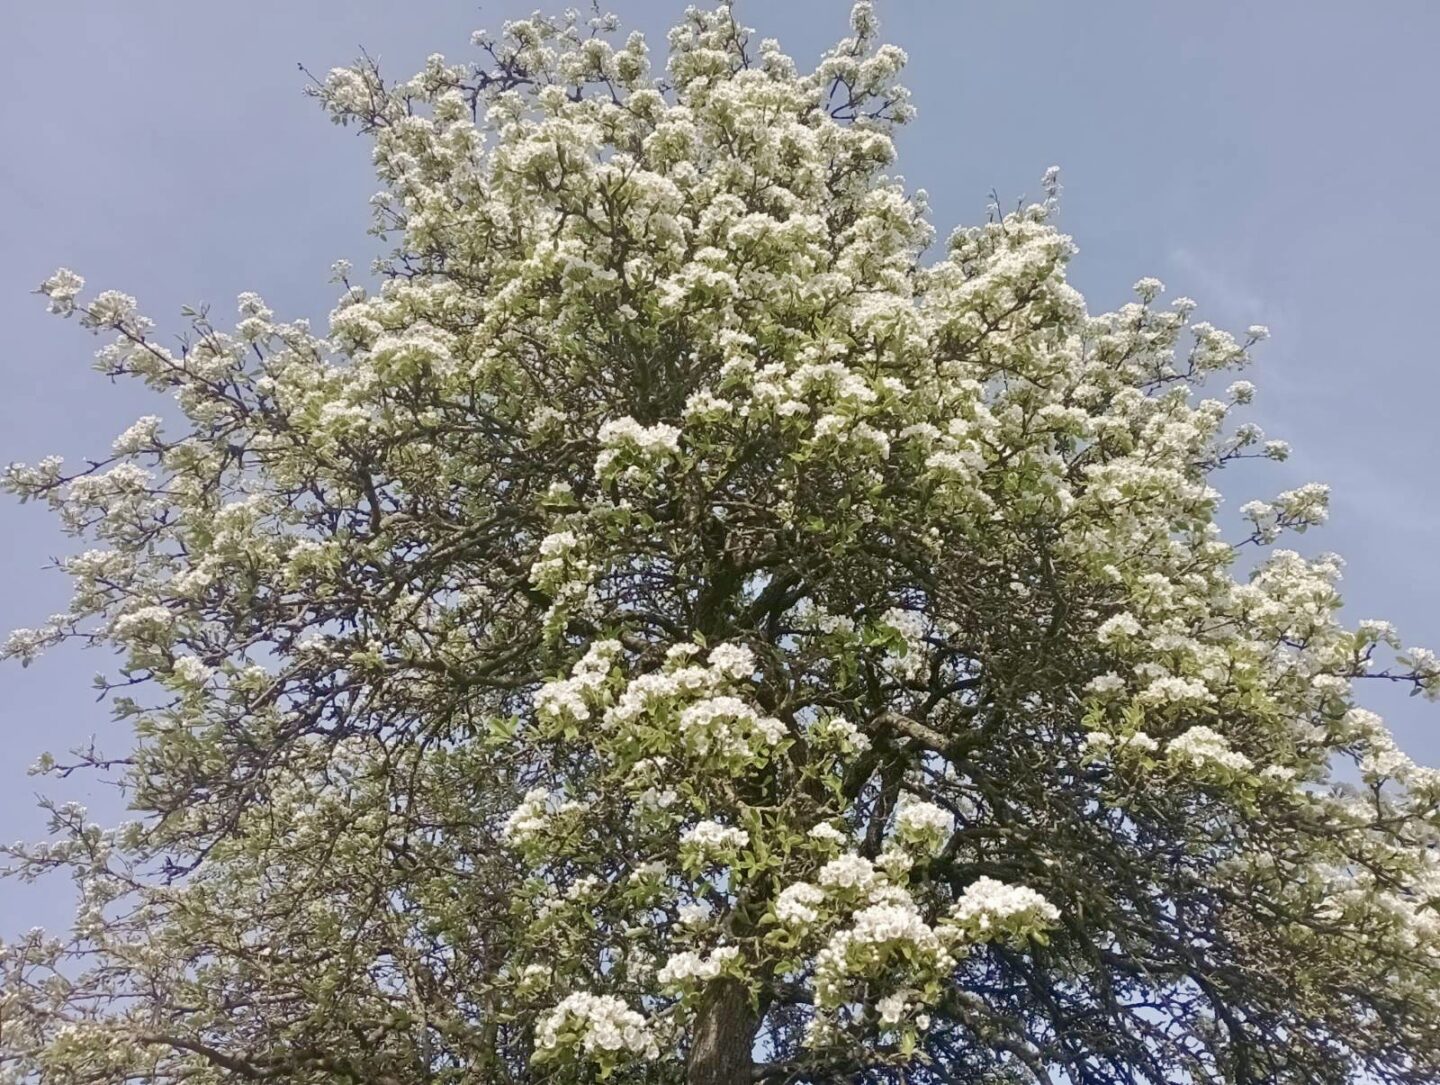 Pæretræet fra 1912 blomstrer